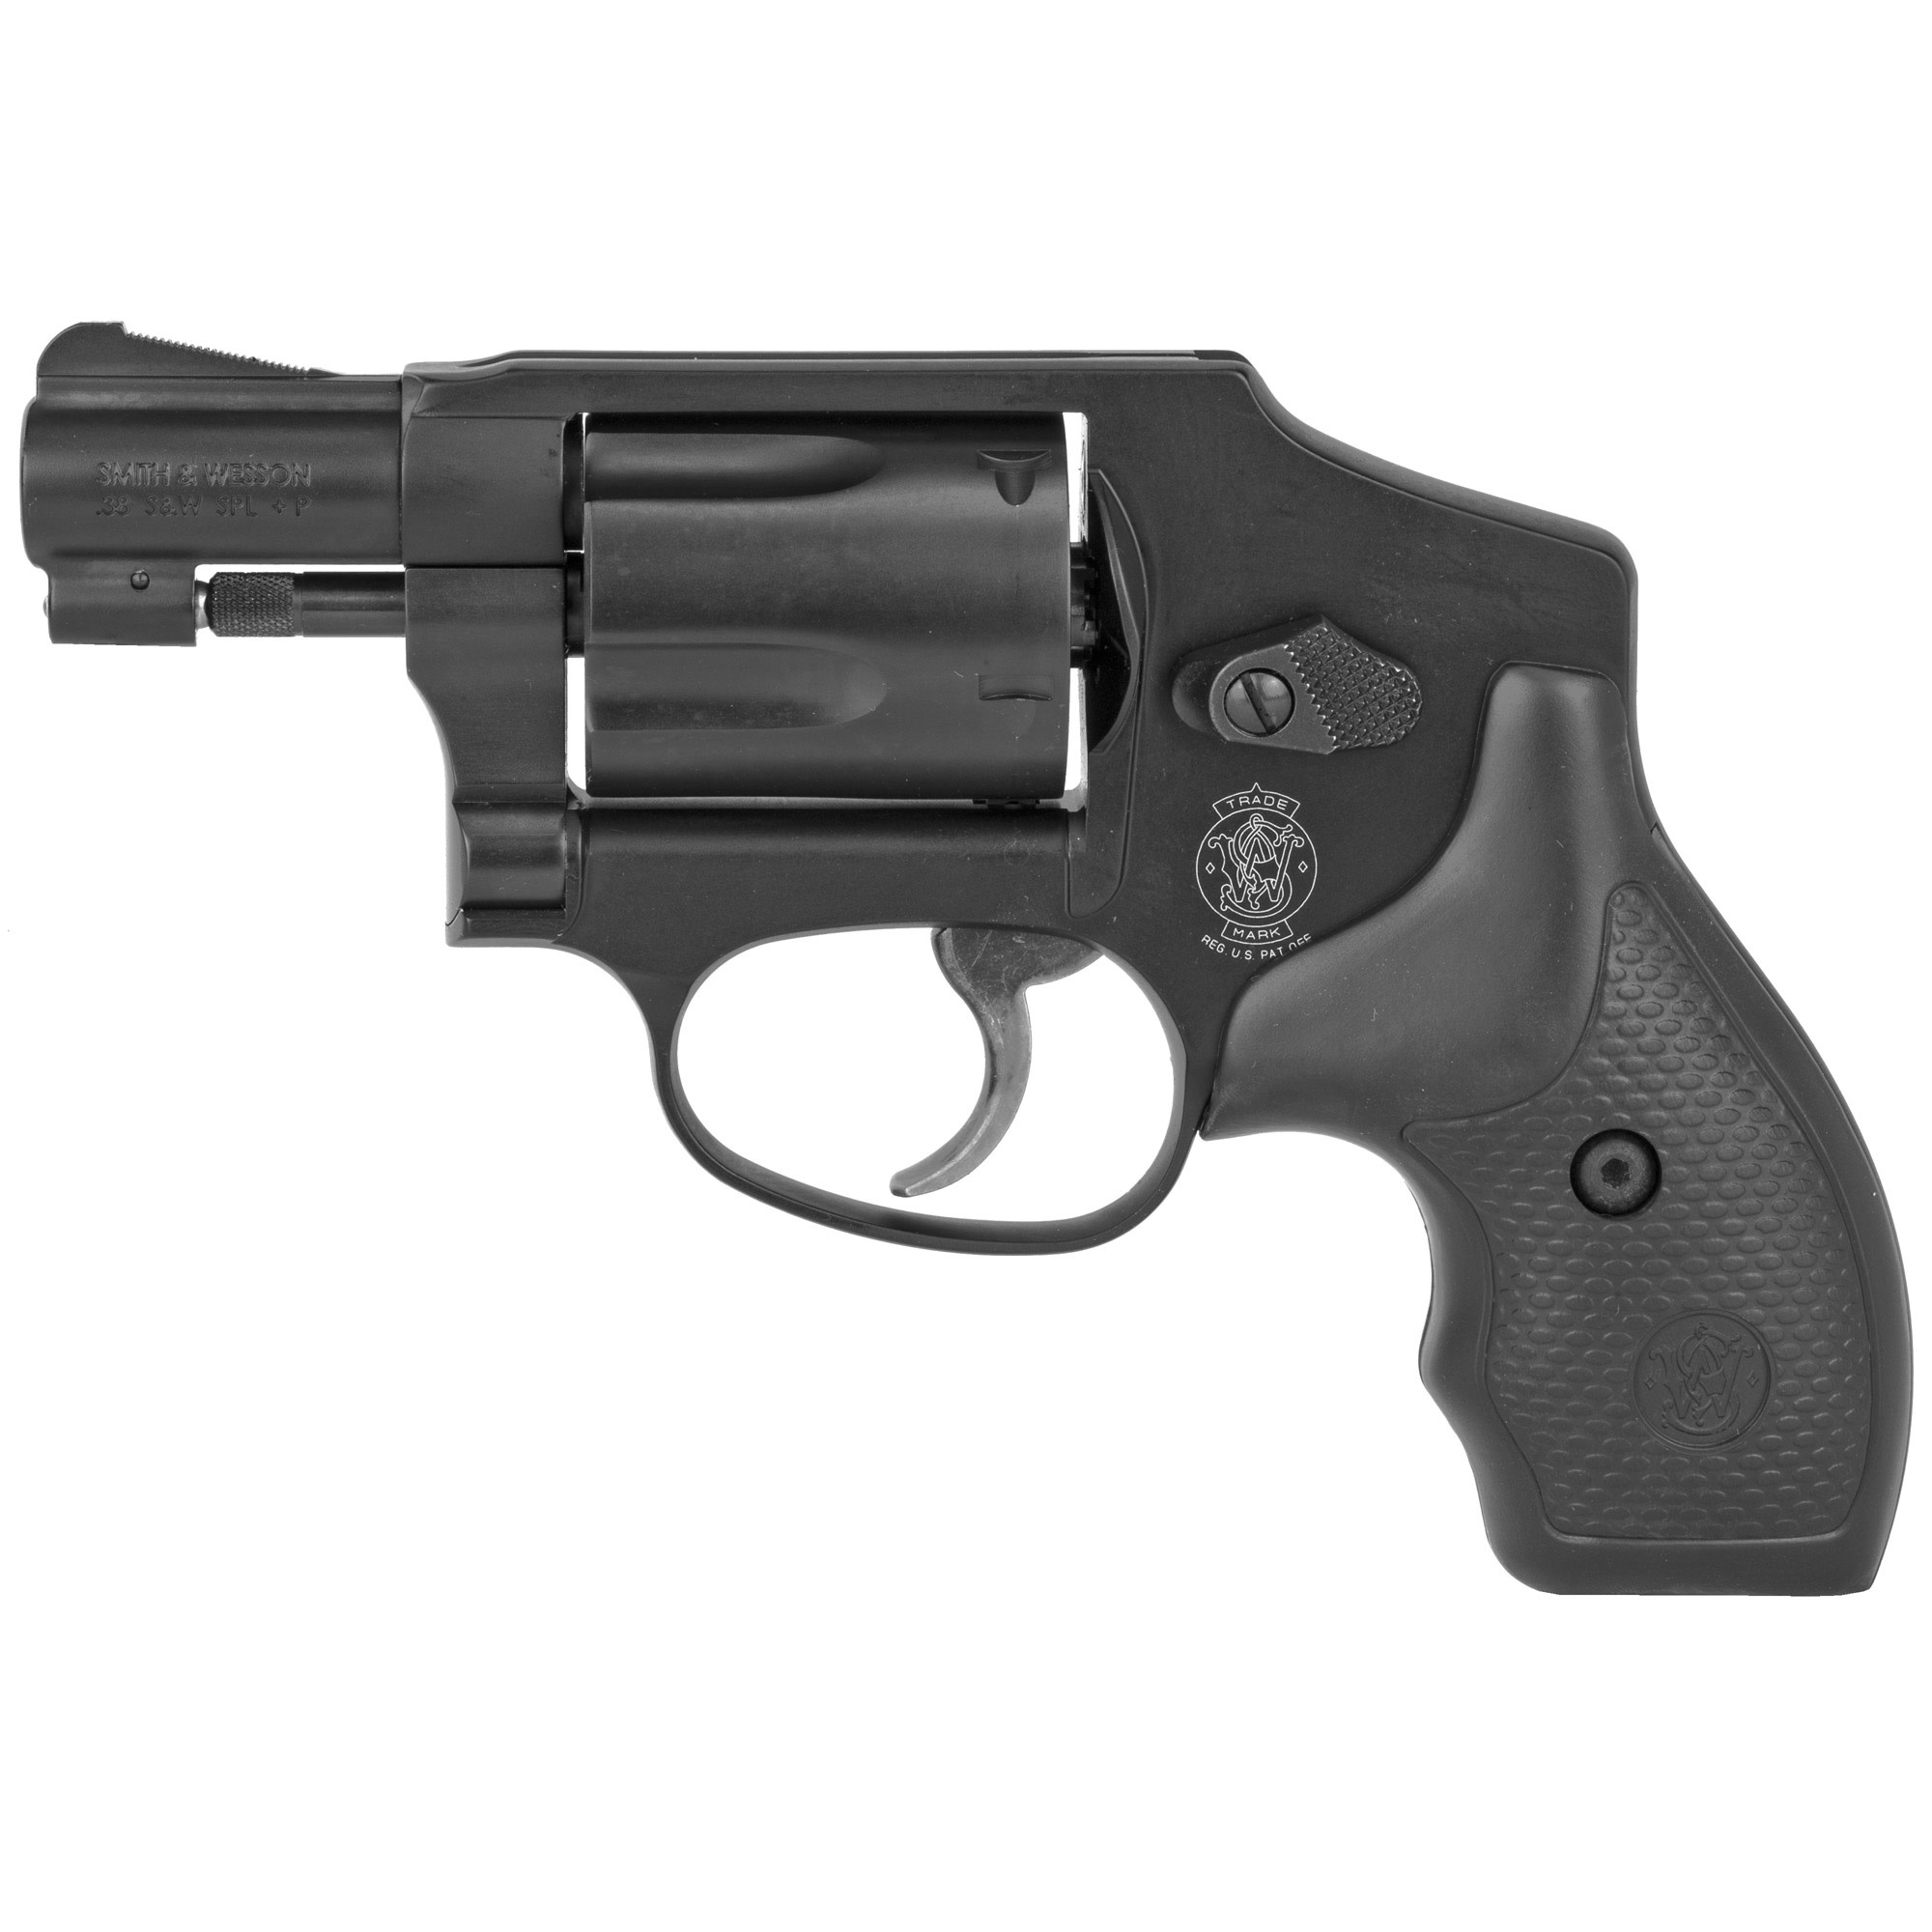 Smith & Wesson 442 .38 SPL. + P 1.88" BLK 5RD Revolver